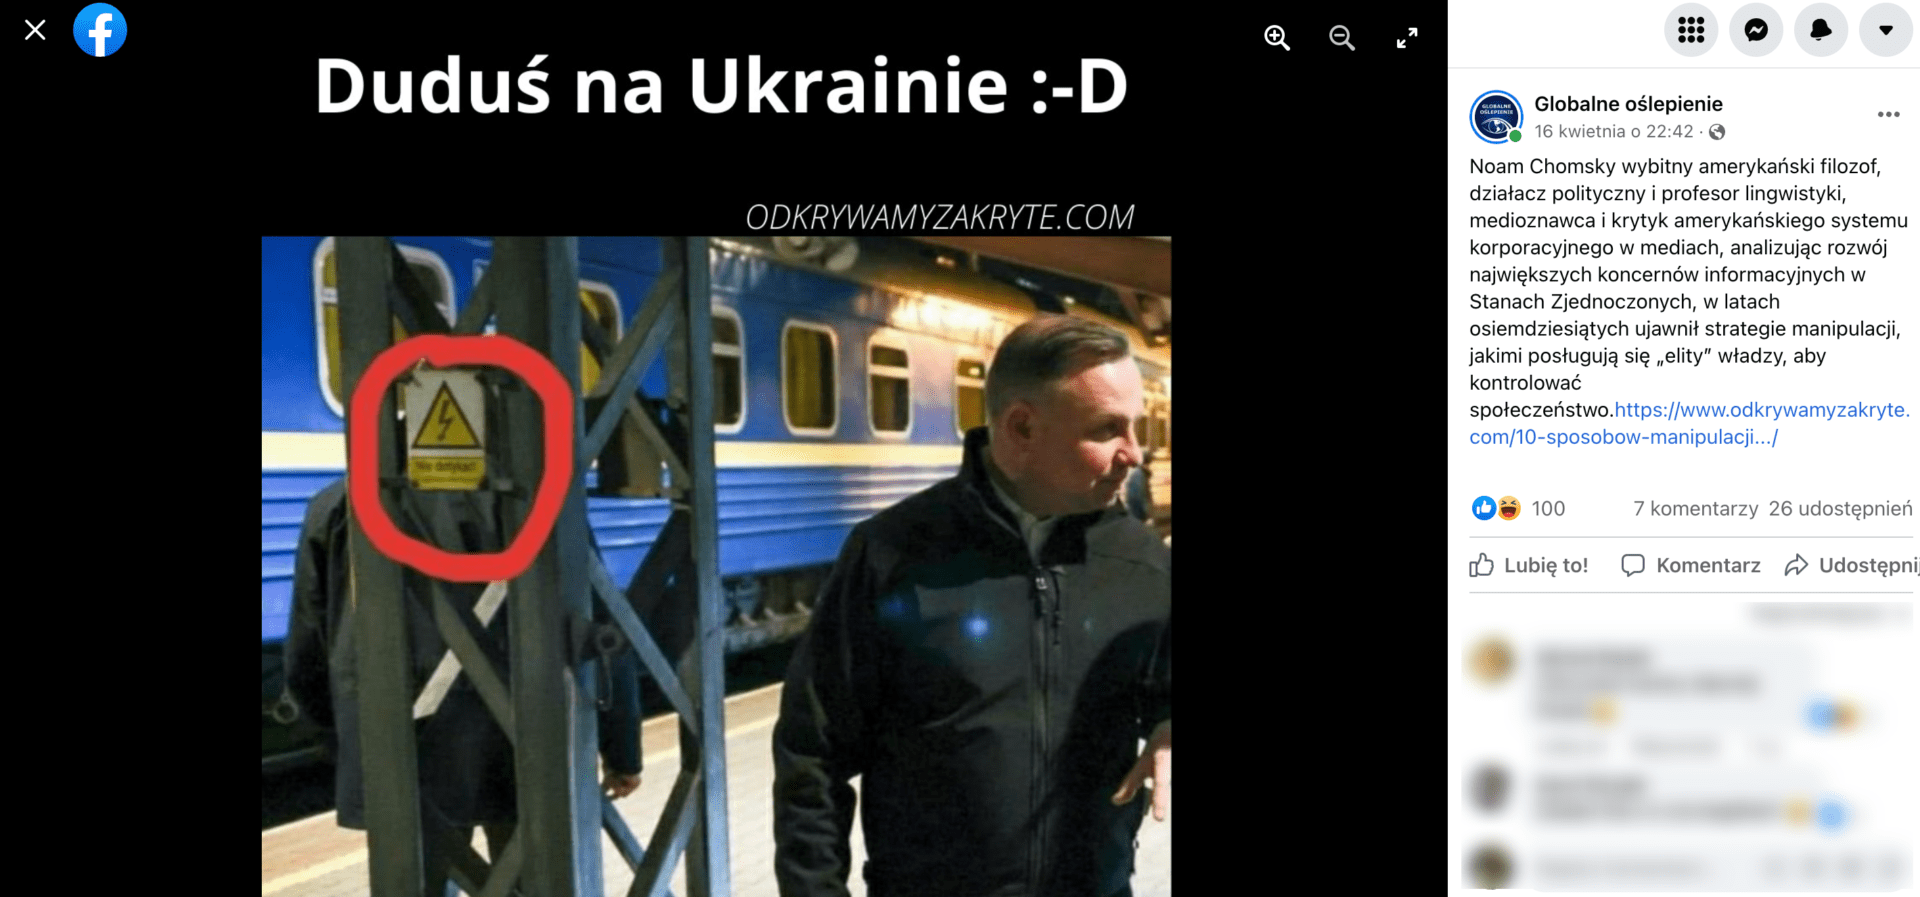 Zrzut ekranu przedstawiający post na Facebooku. Na zdjęciu widoczny jest Andrzej Duda na dworcu kolejowym. Wpis zdobył 100 polubień, 7 komentarzy i 26 udostępnień.